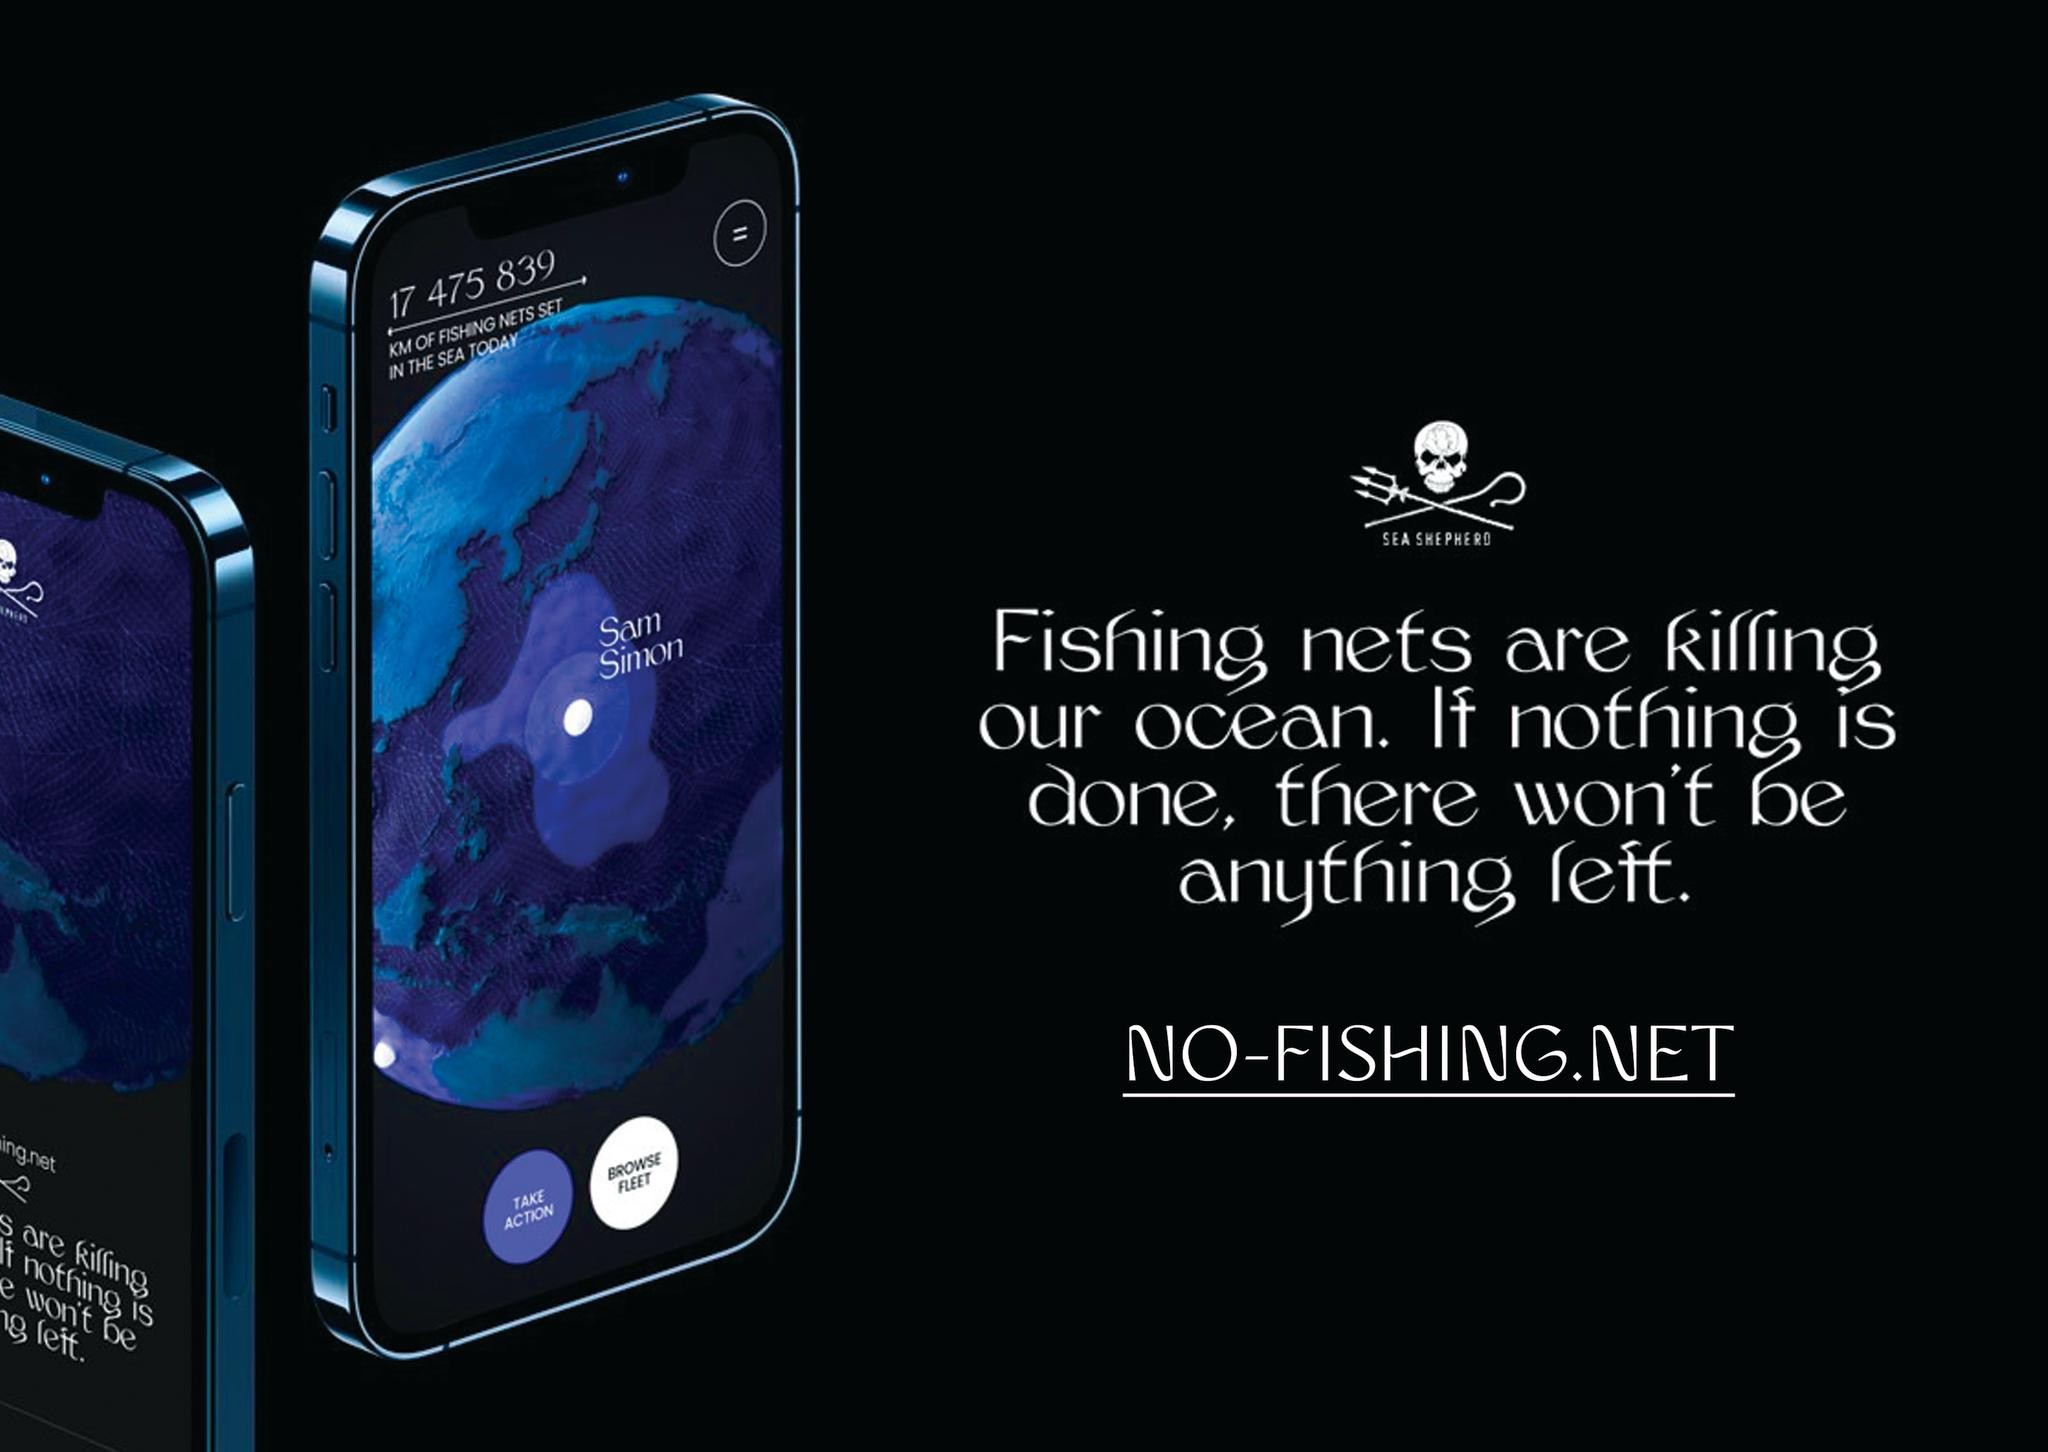 no-fishing.net